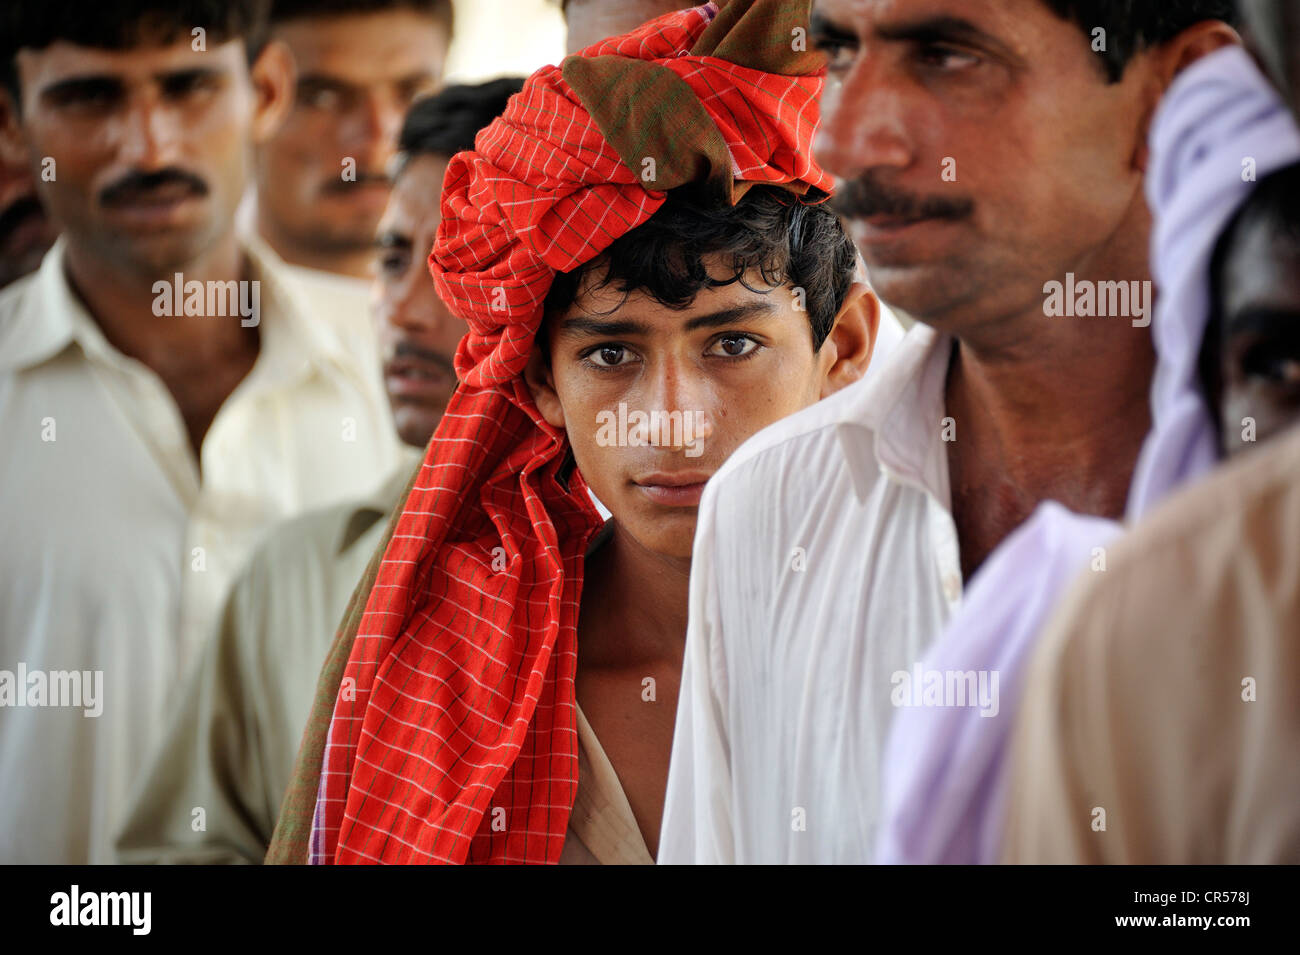 La gioventù che indossa un panno rosso sul suo capo e gli uomini durante la distribuzione di beni da parte di un'organizzazione di beneficenza dopo il diluvio Foto Stock